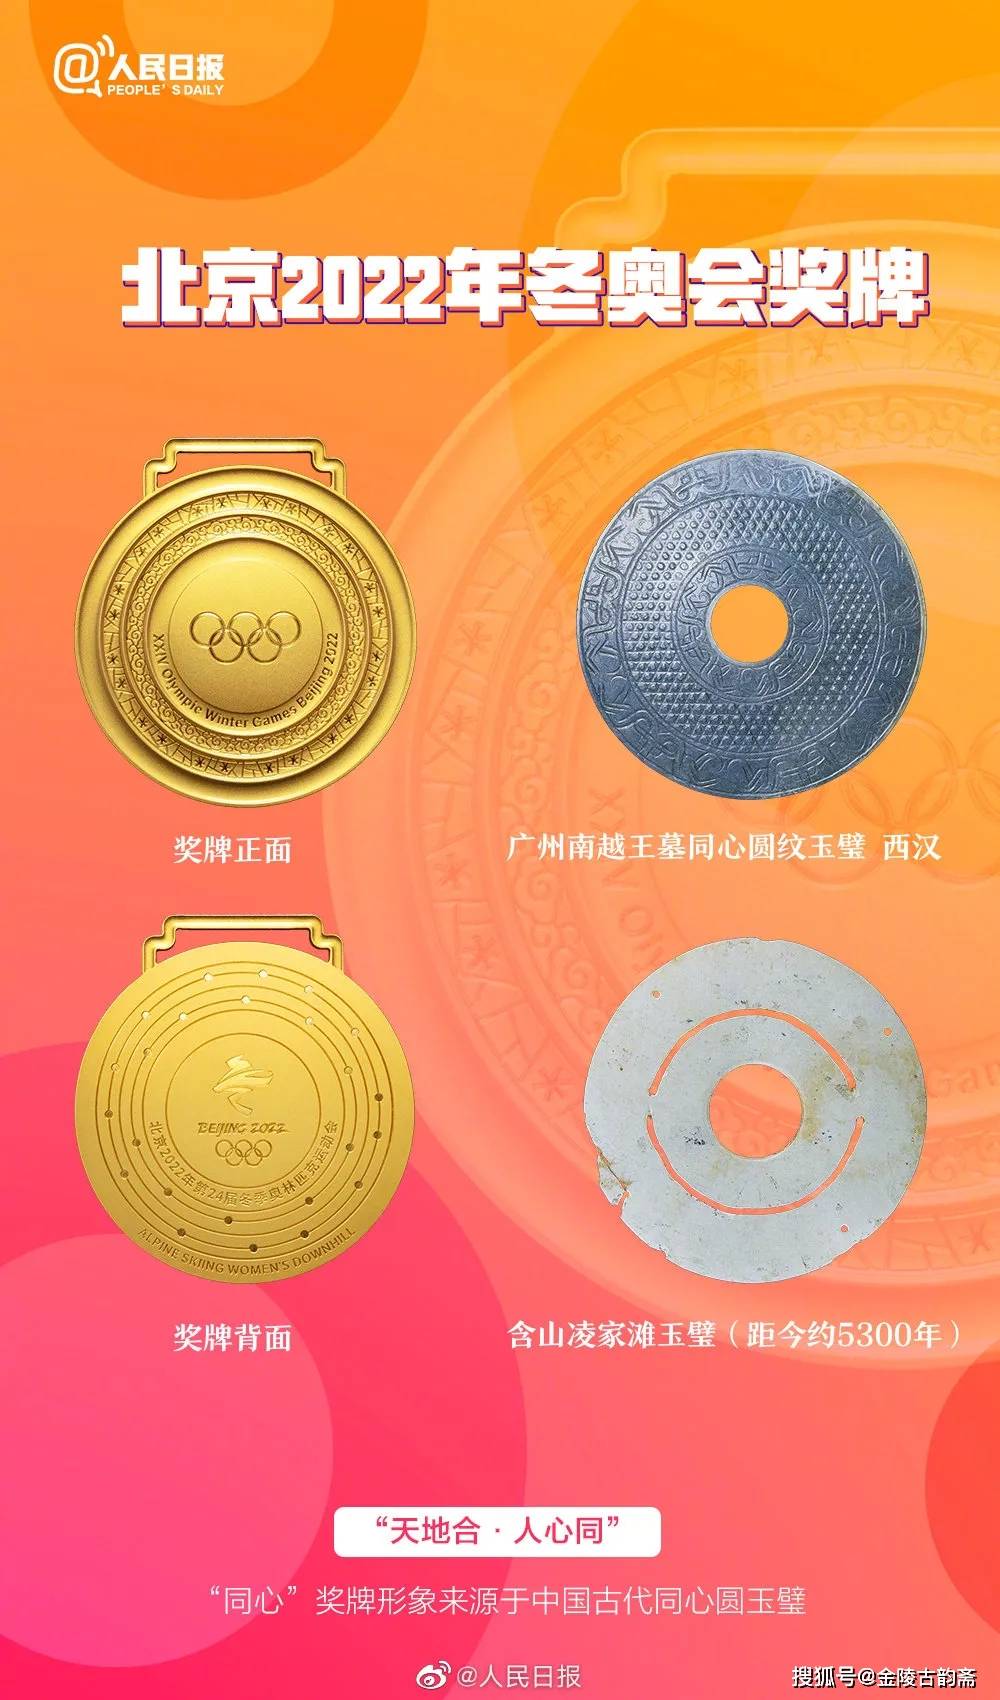 北京冬奥会奖牌"同心"设计灵感来源于古玉壁!